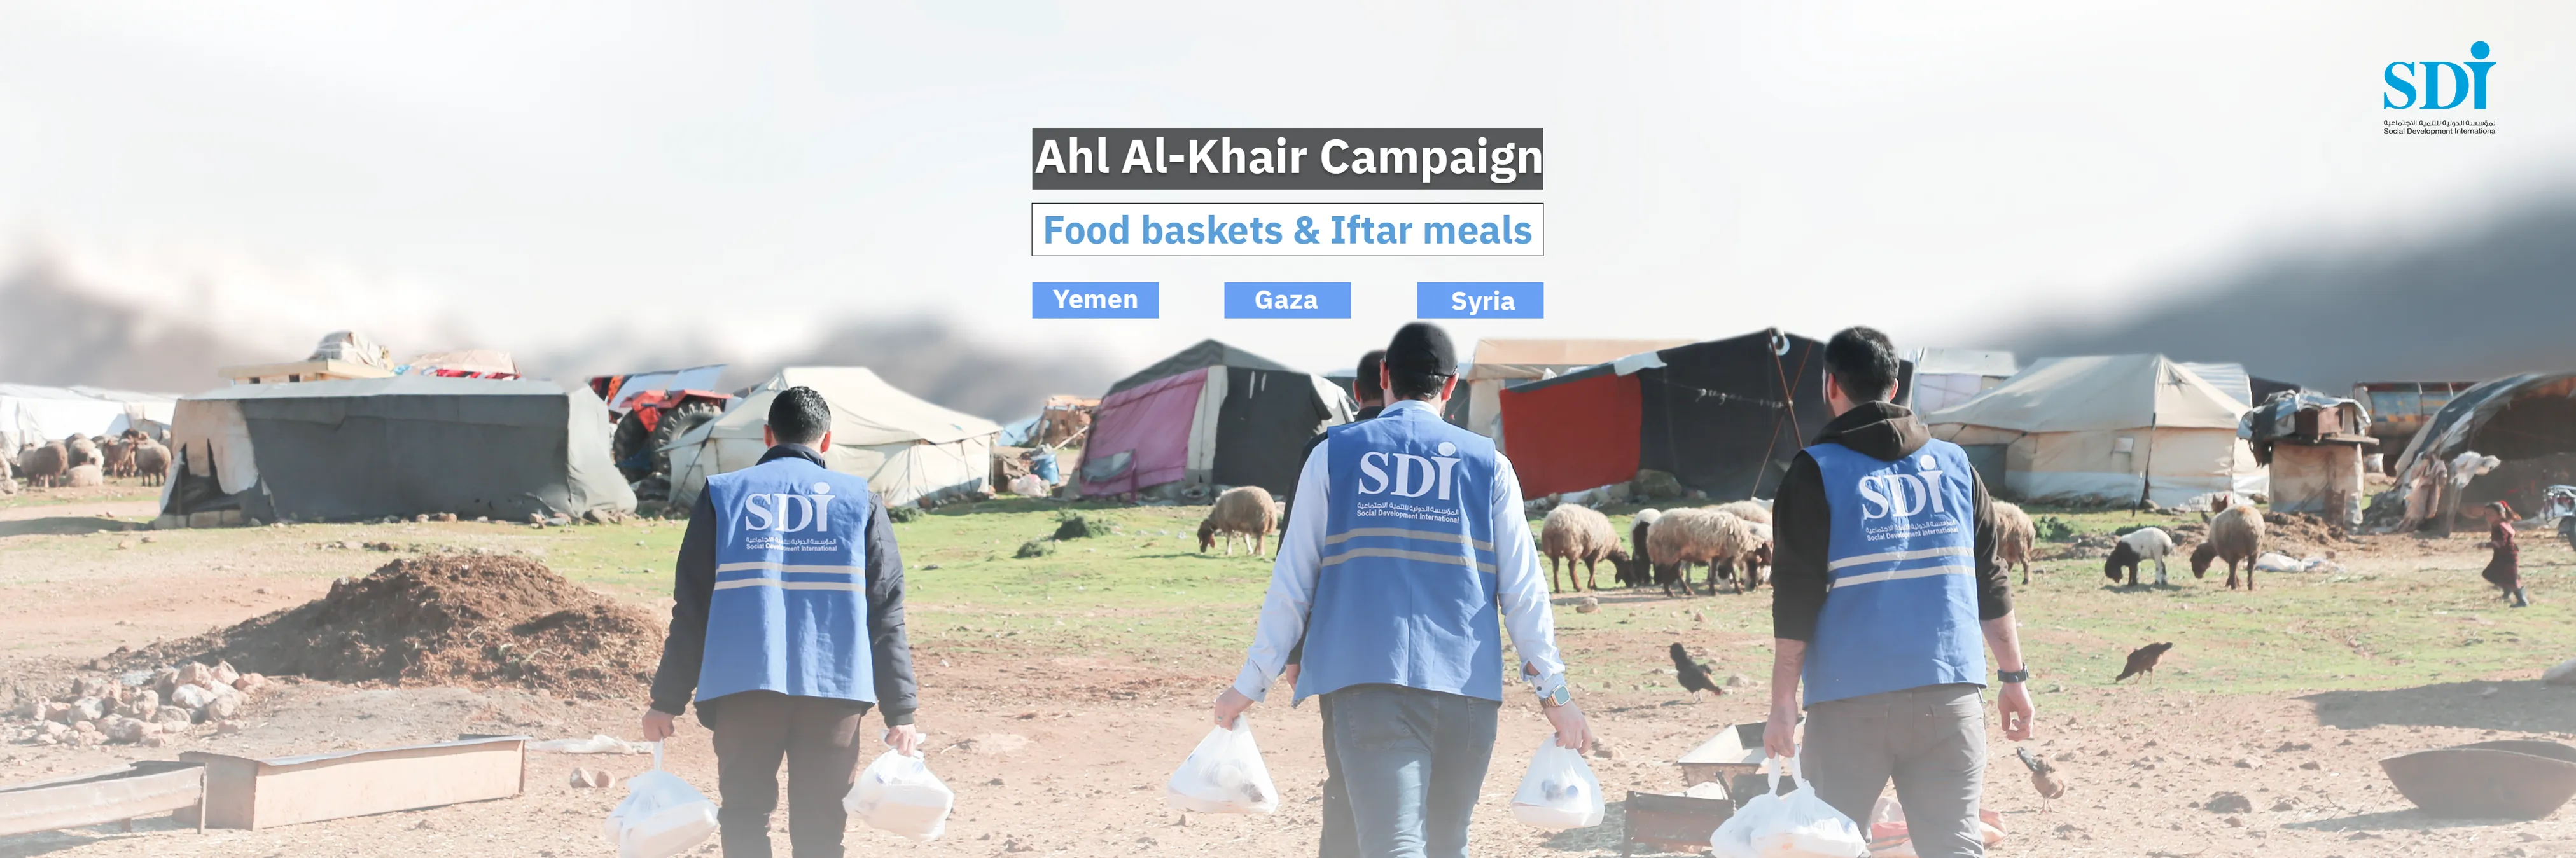 -Ahl Al-Khair Campaign